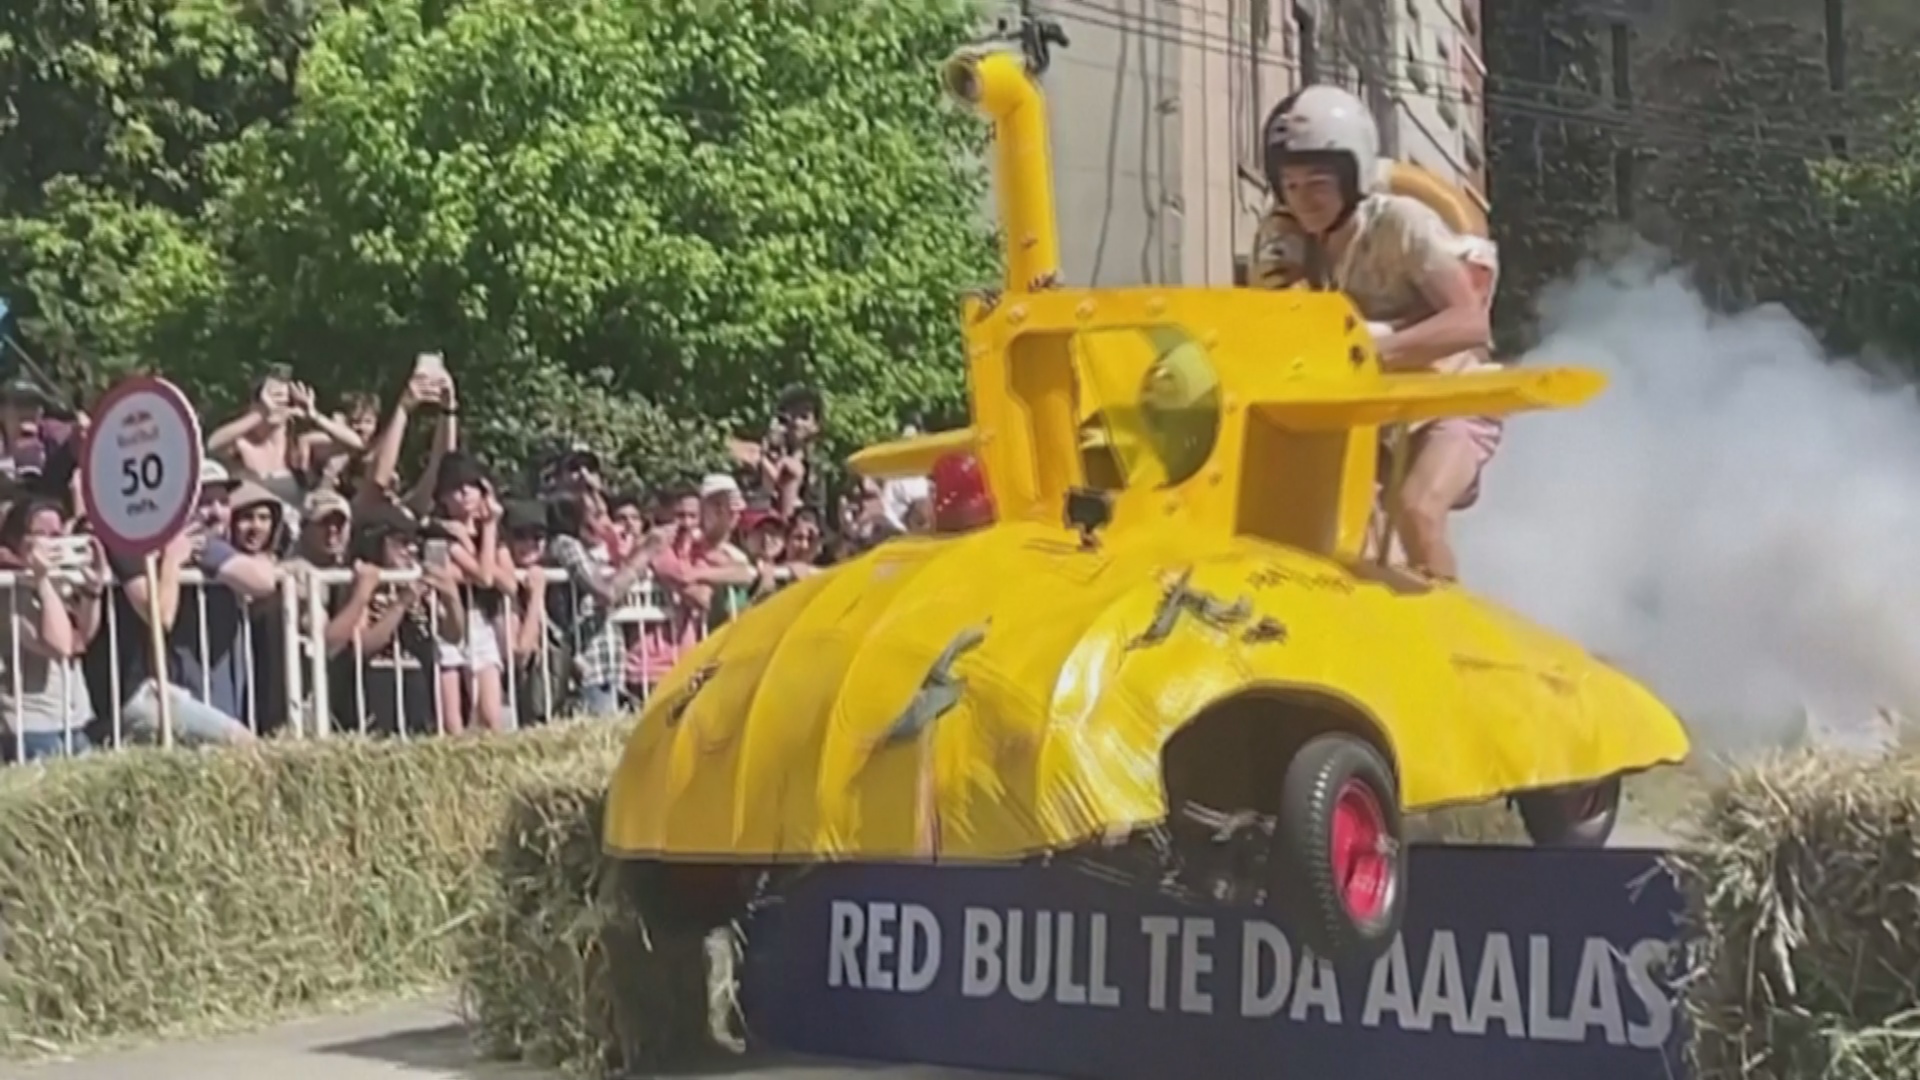 Сумасшедшие гонки на забавных машинах устроили в Буэнос-Айресе